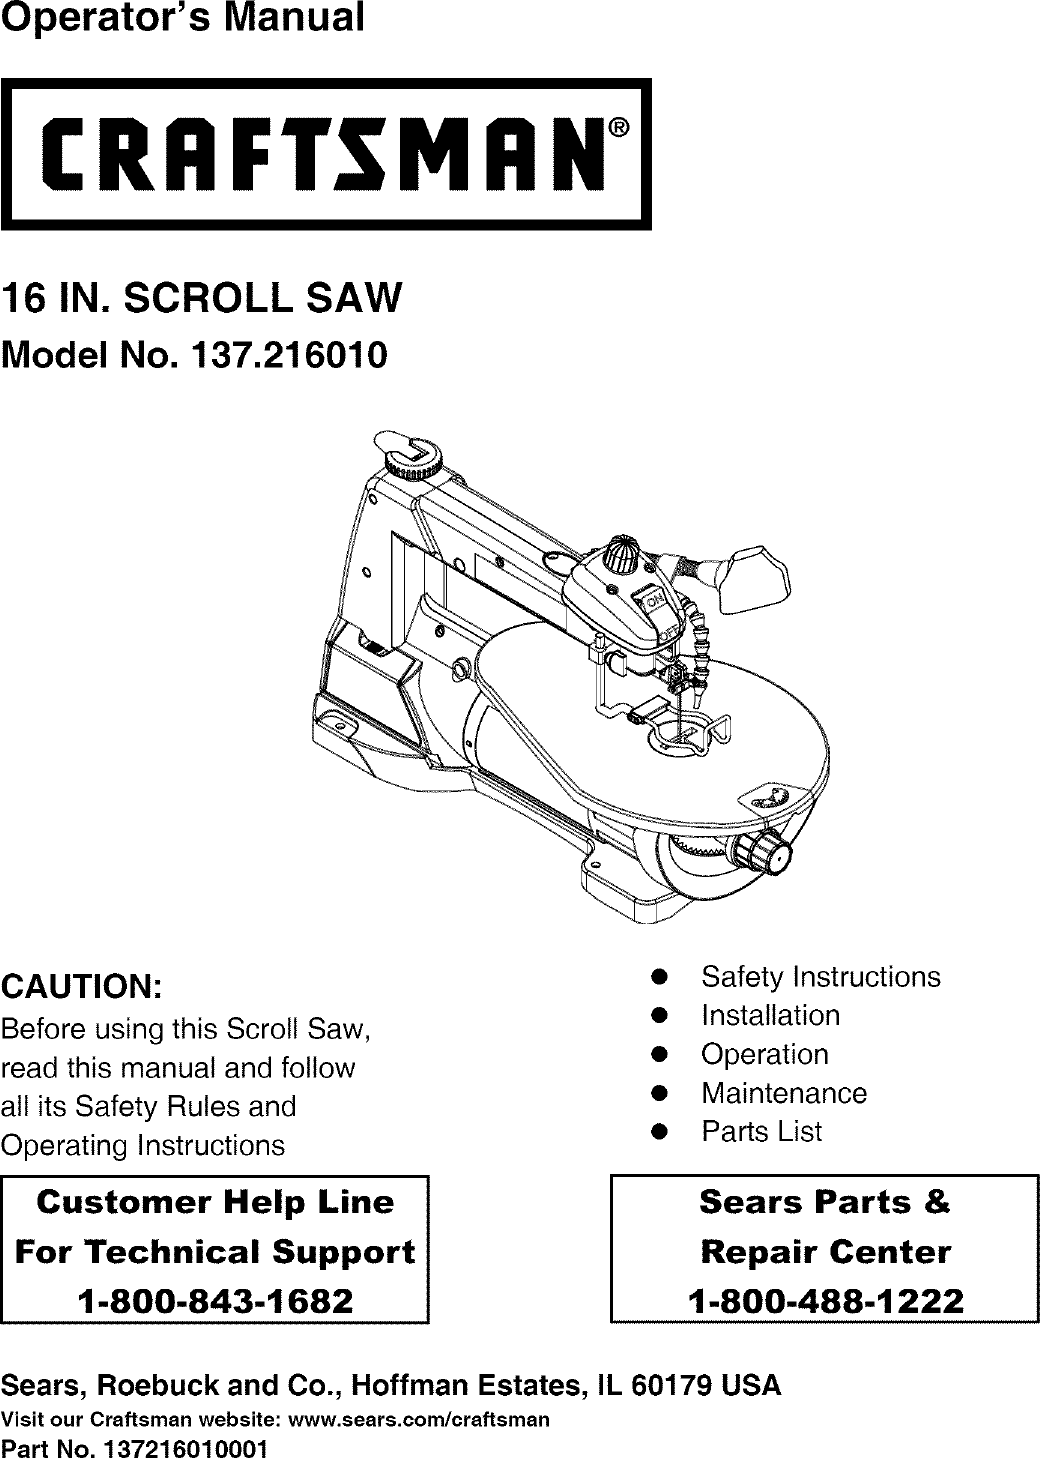 Инструкция по эксплуатации мини пилы. 16 Scroll saw. Instruction manual for model 50083 d33/Capacitance инструкция. Craftsman Design Style to improve составить предложение.